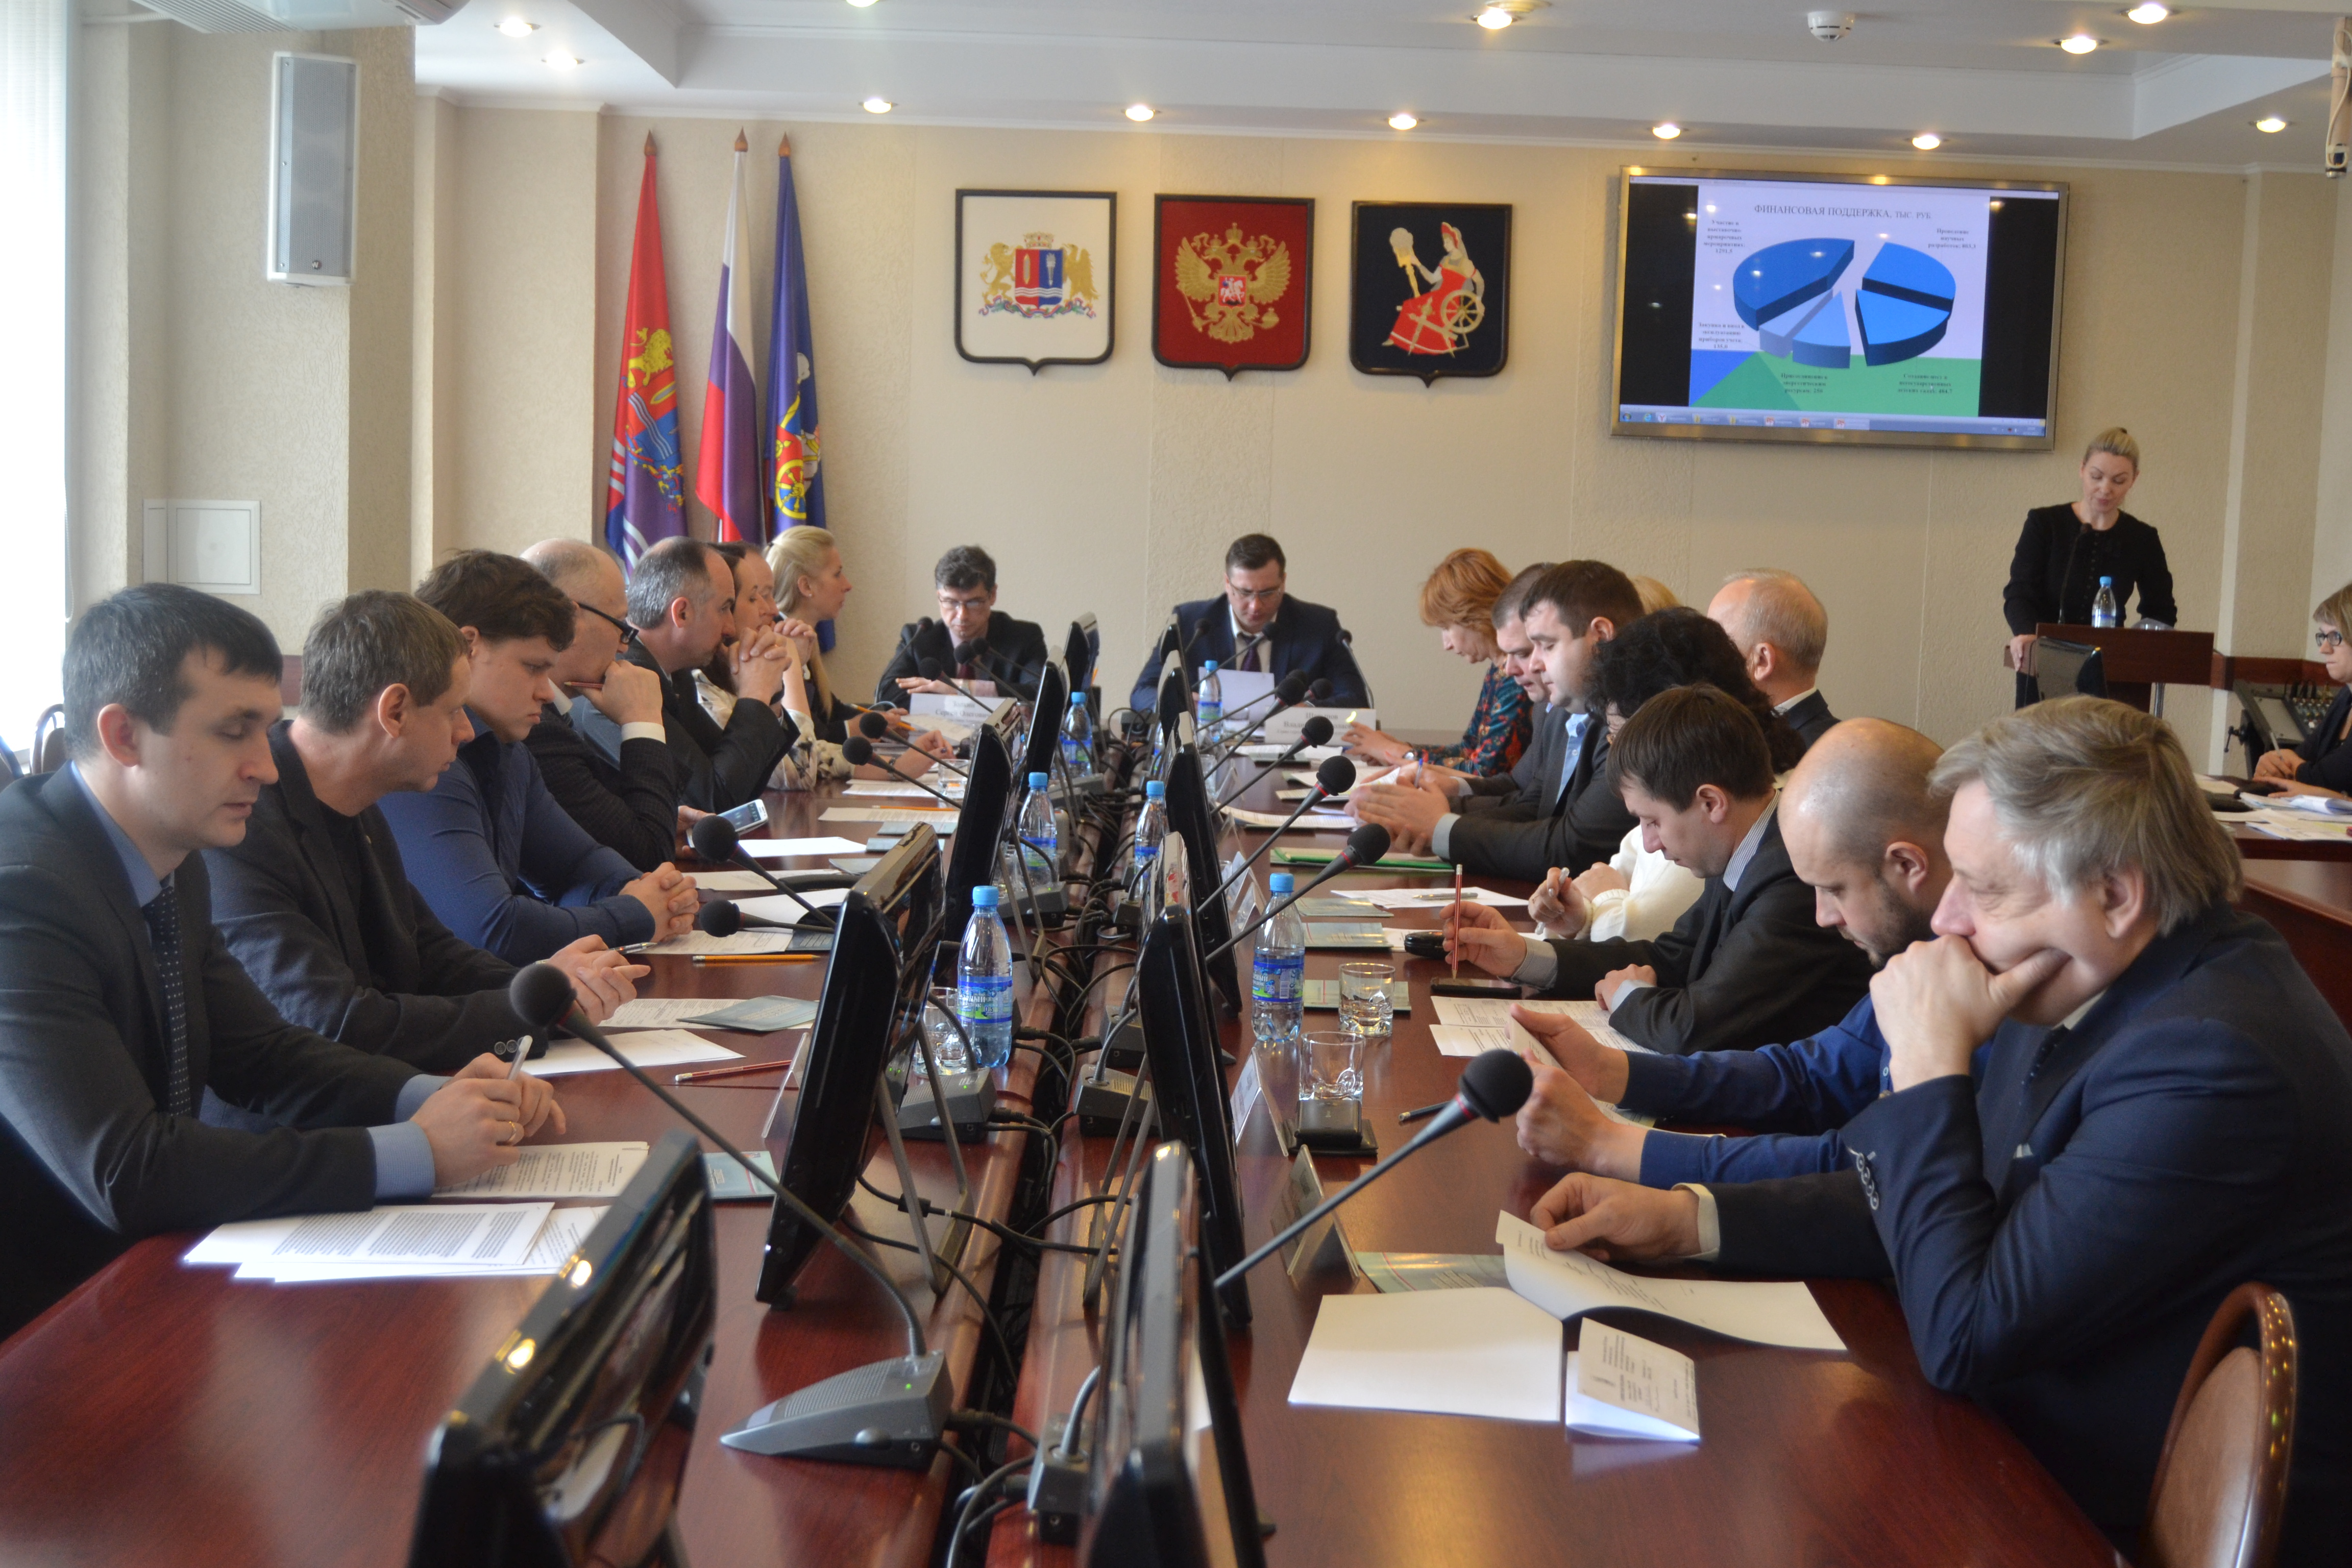 Координационный совет по развитию малого и среднего предпринимательства при Администрации города Иванова